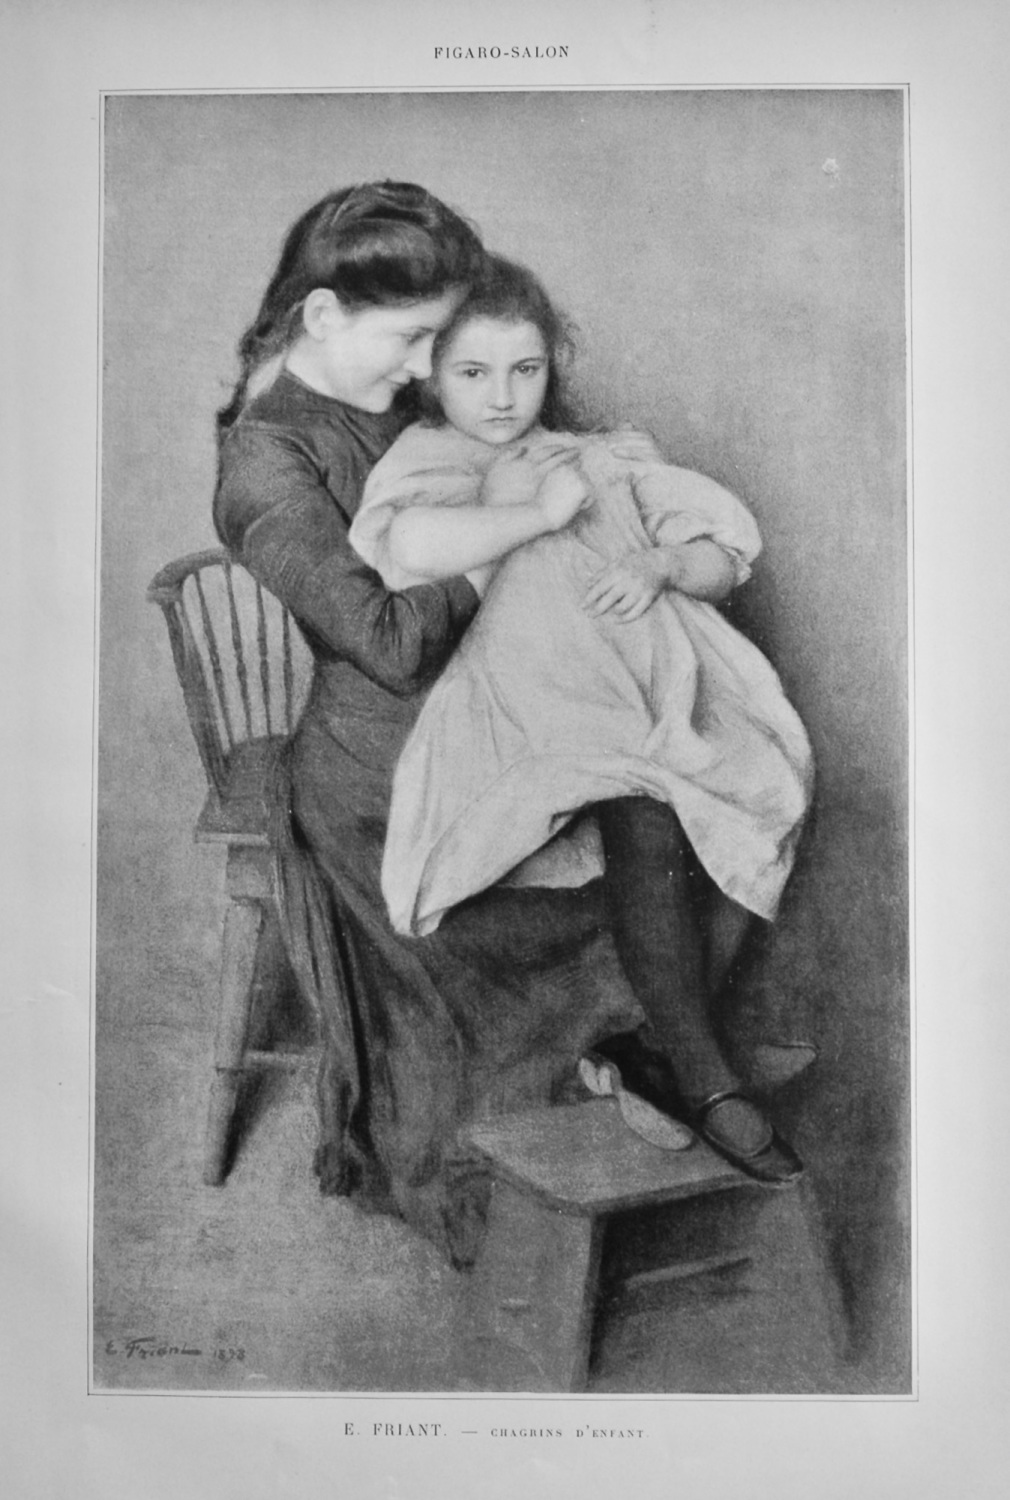 Chagrins D'Enfant.  (Artist- E. Friend).  1899.